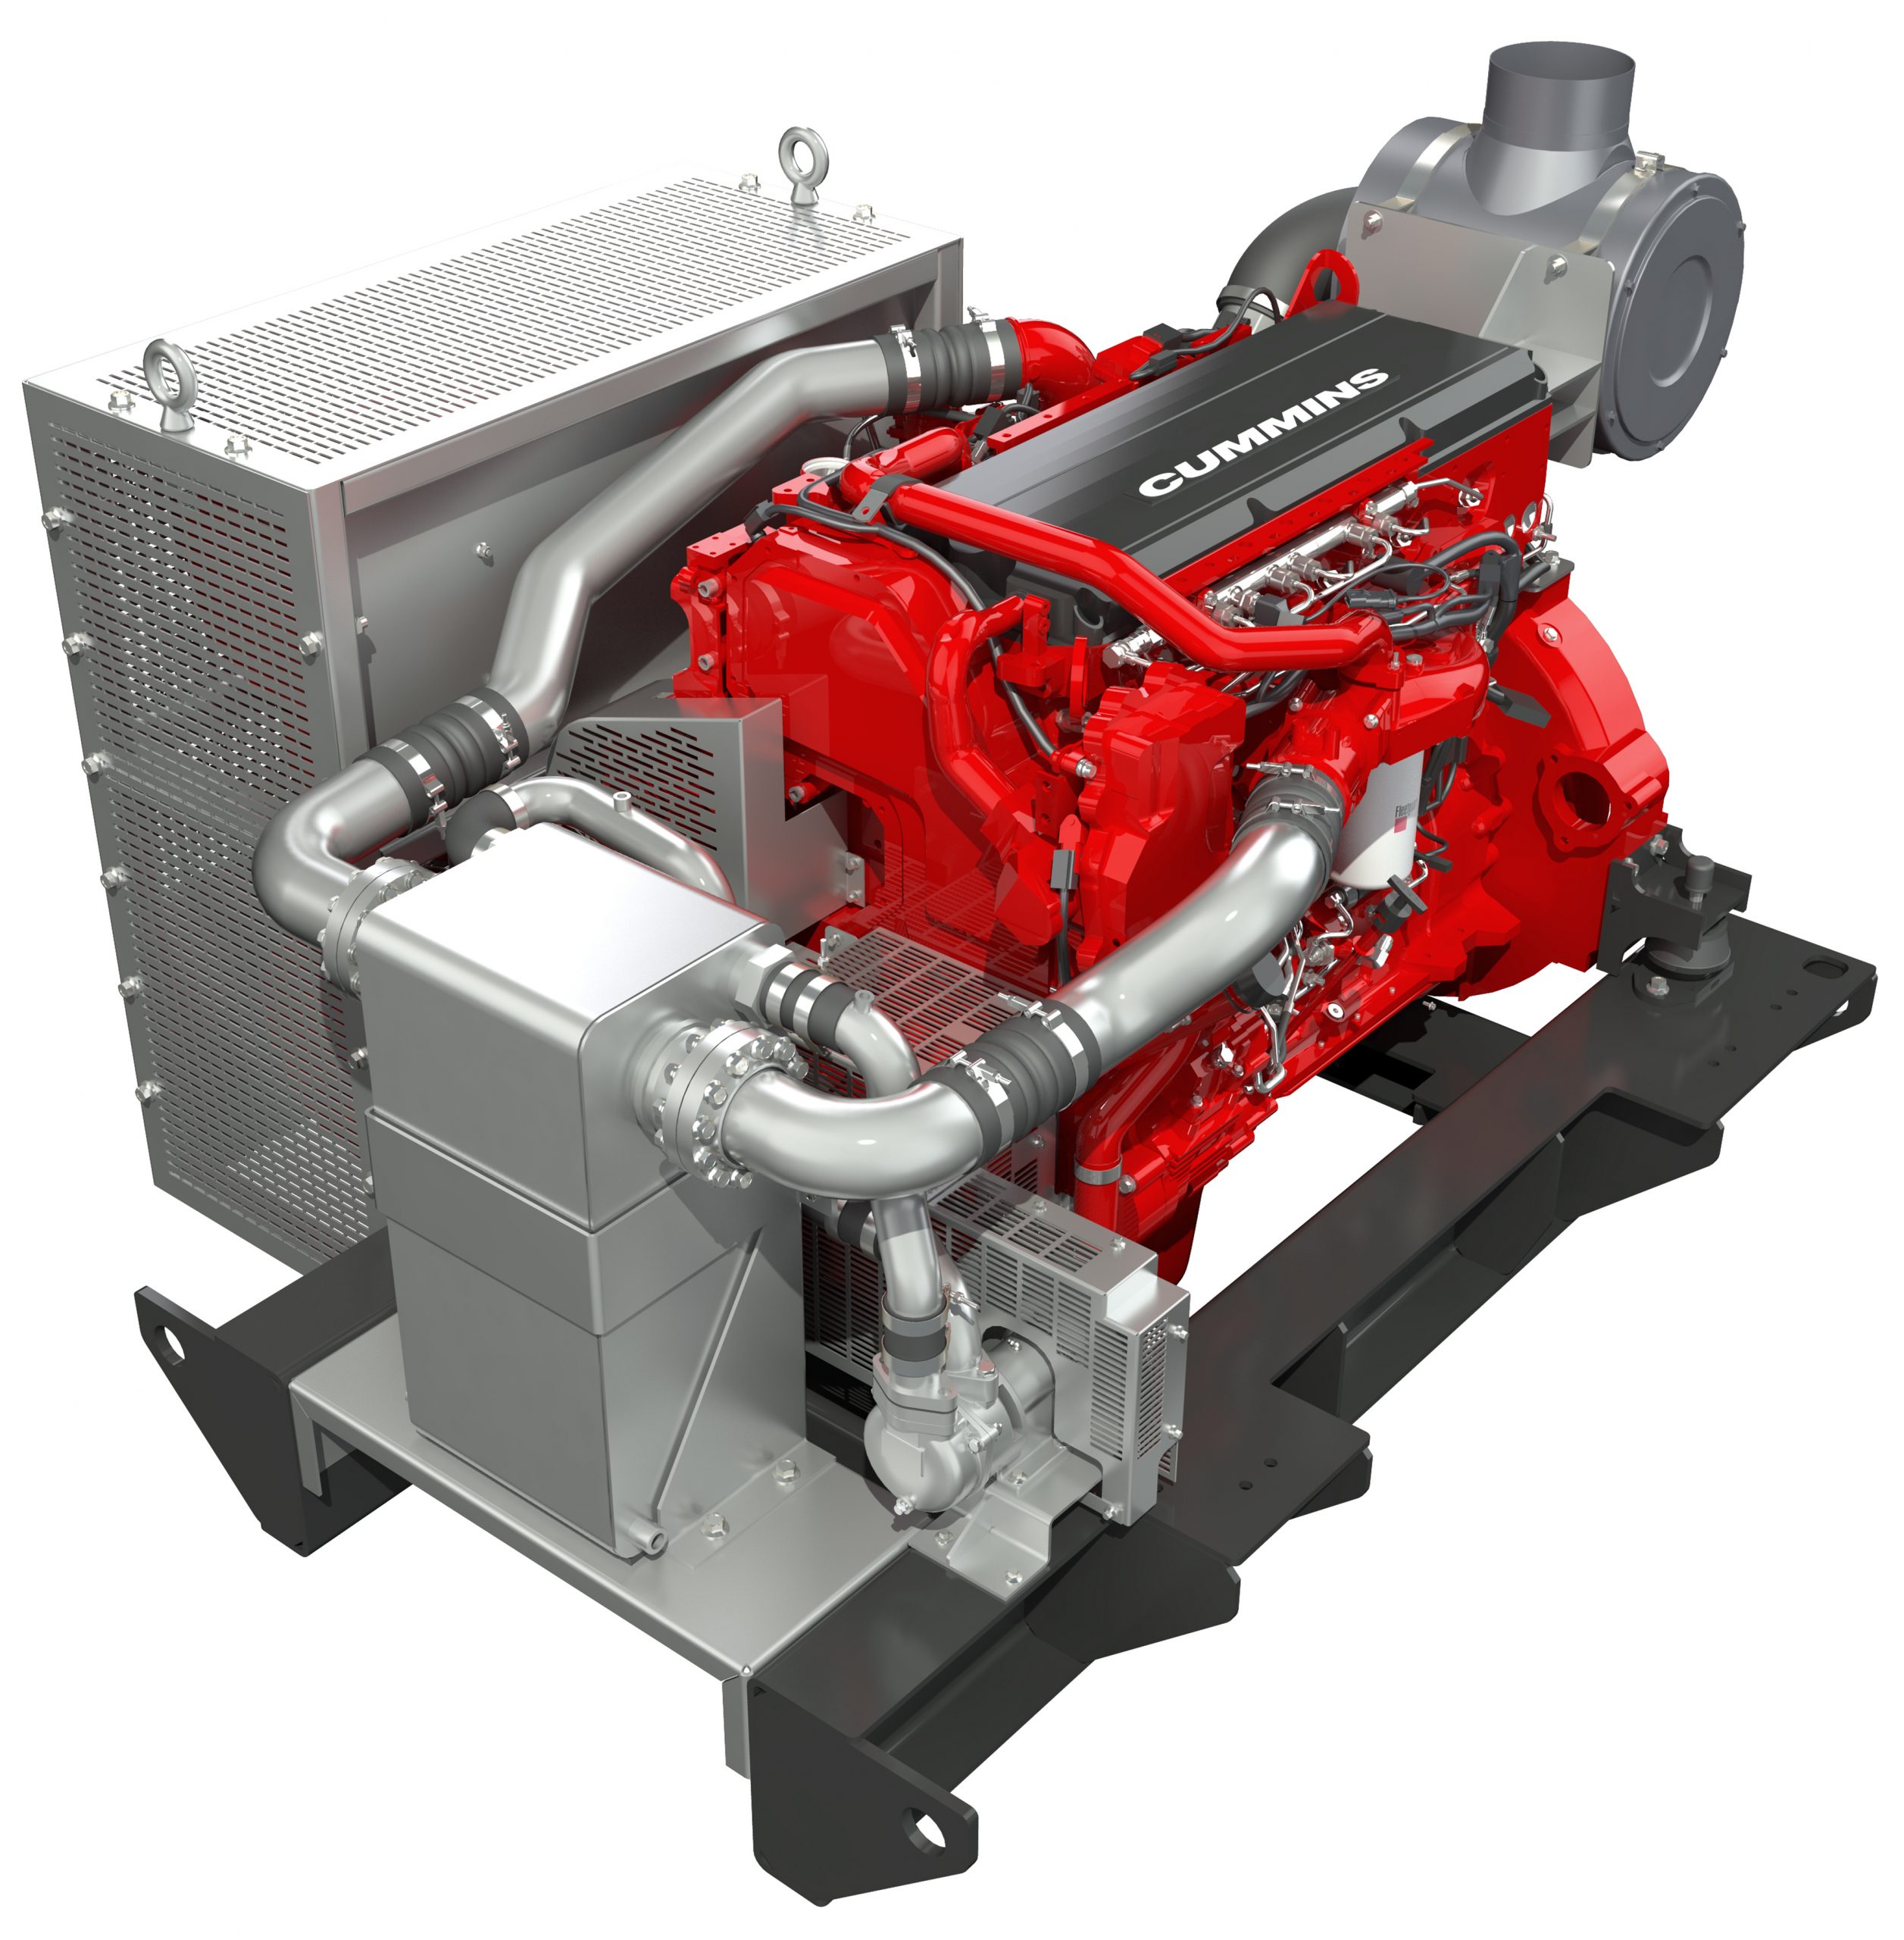 De X15 is een door Cummins gemariniseerde industriemotor en levert maximaal 505 kW. Het complete nabehandelingssysteem is naar wens van de klant naast of bovenop de motor gemonteerd. (Foto’s Cummins)